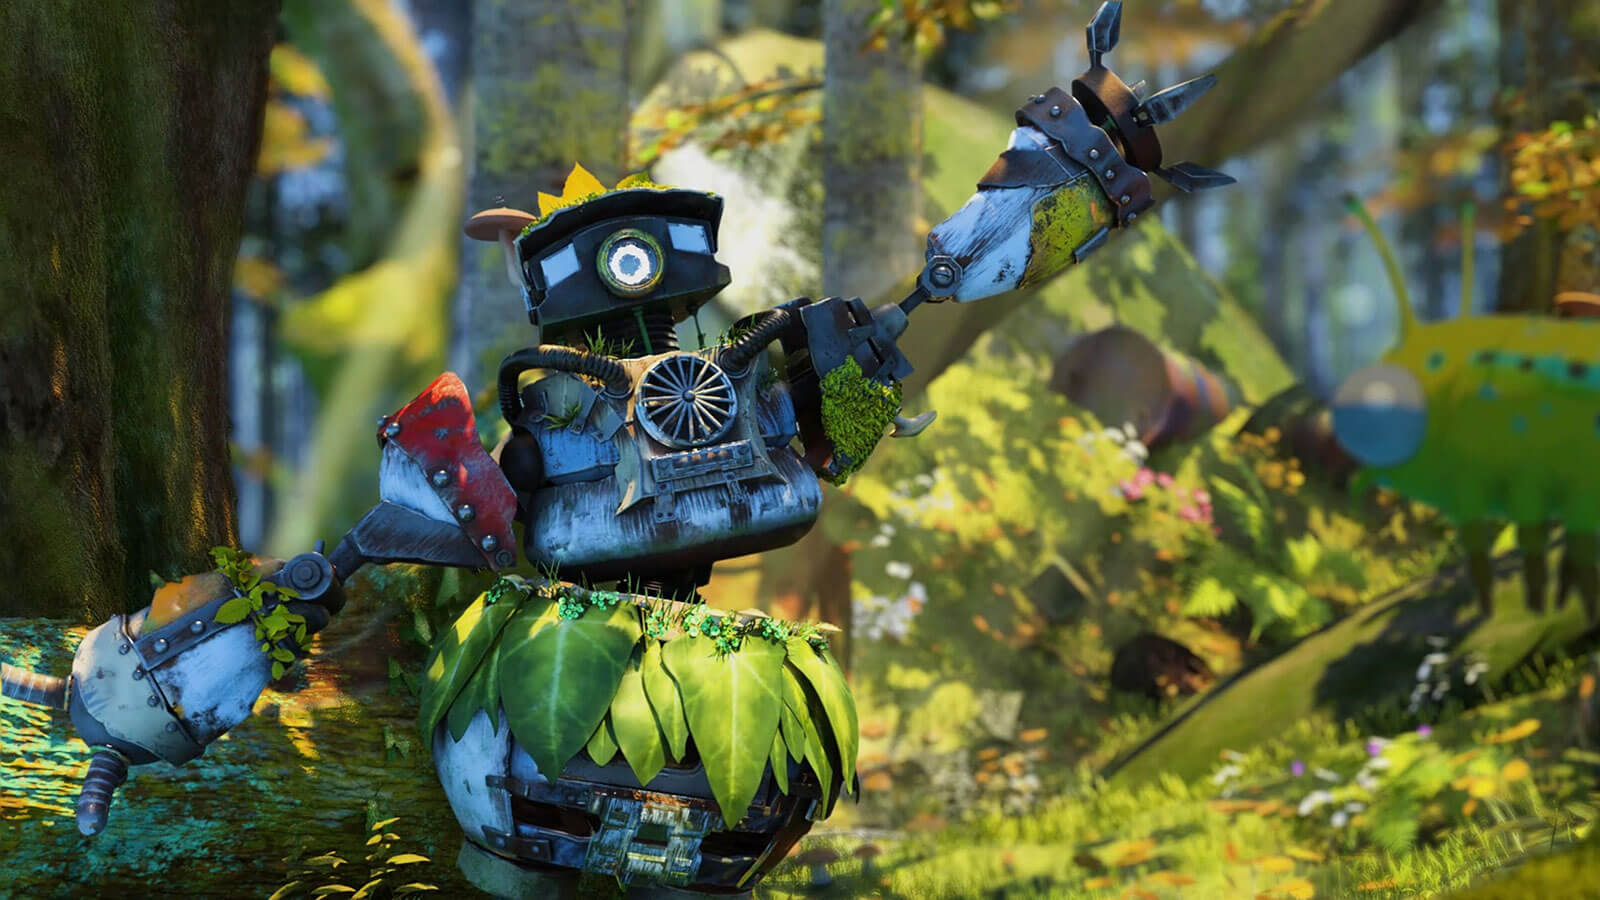 Un robot hecho de varias partes y cubierto de plantas y musgo posa en un bosque